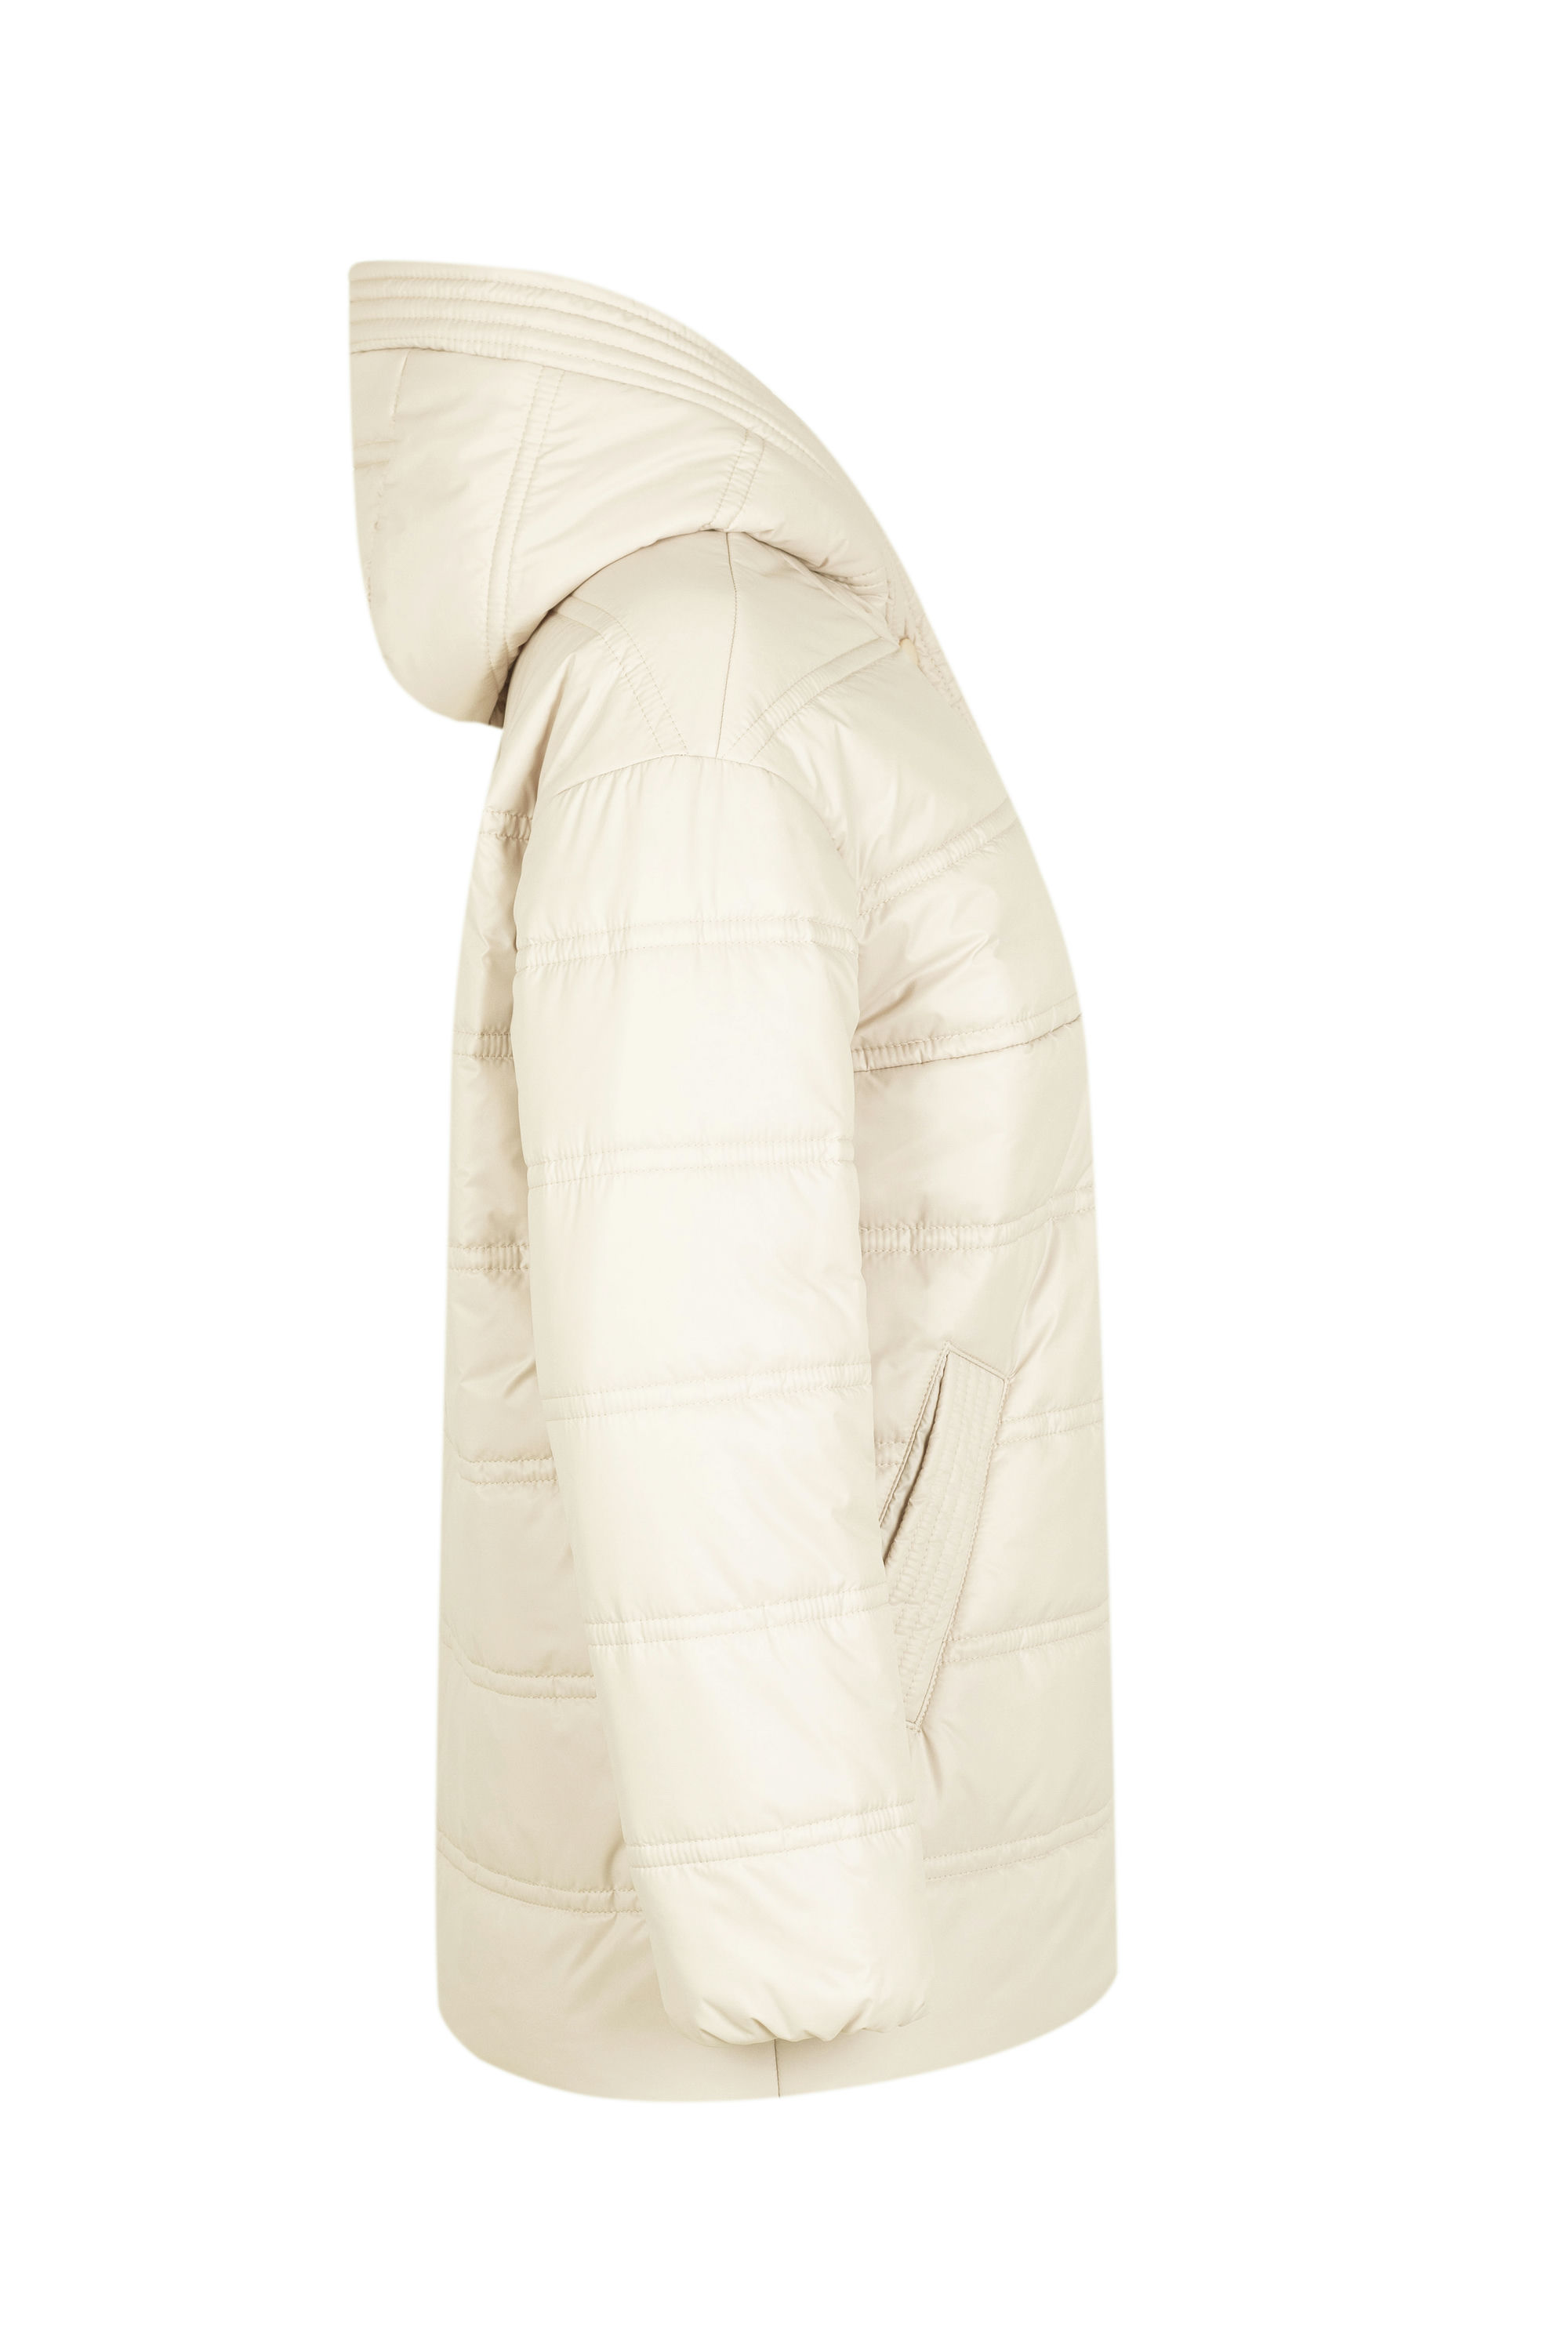 Куртка женская плащевая утепленная 4-155. Фото 6.